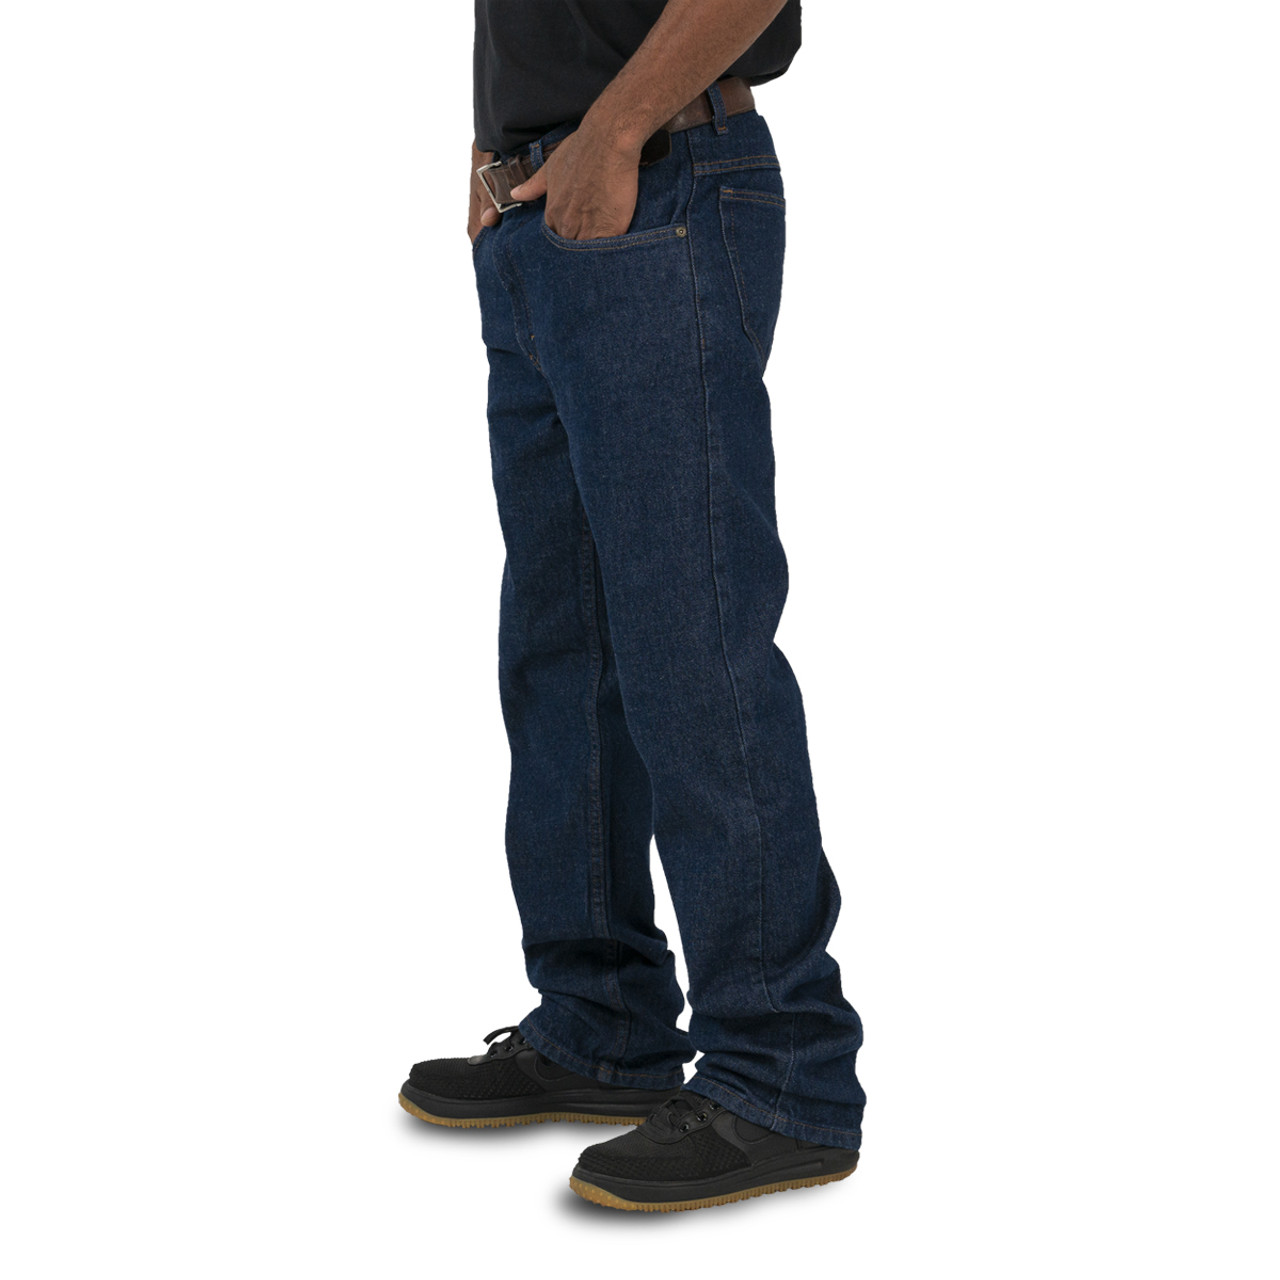 Traditional Denim | KEY 5-Pocket Fit for Jeans Men